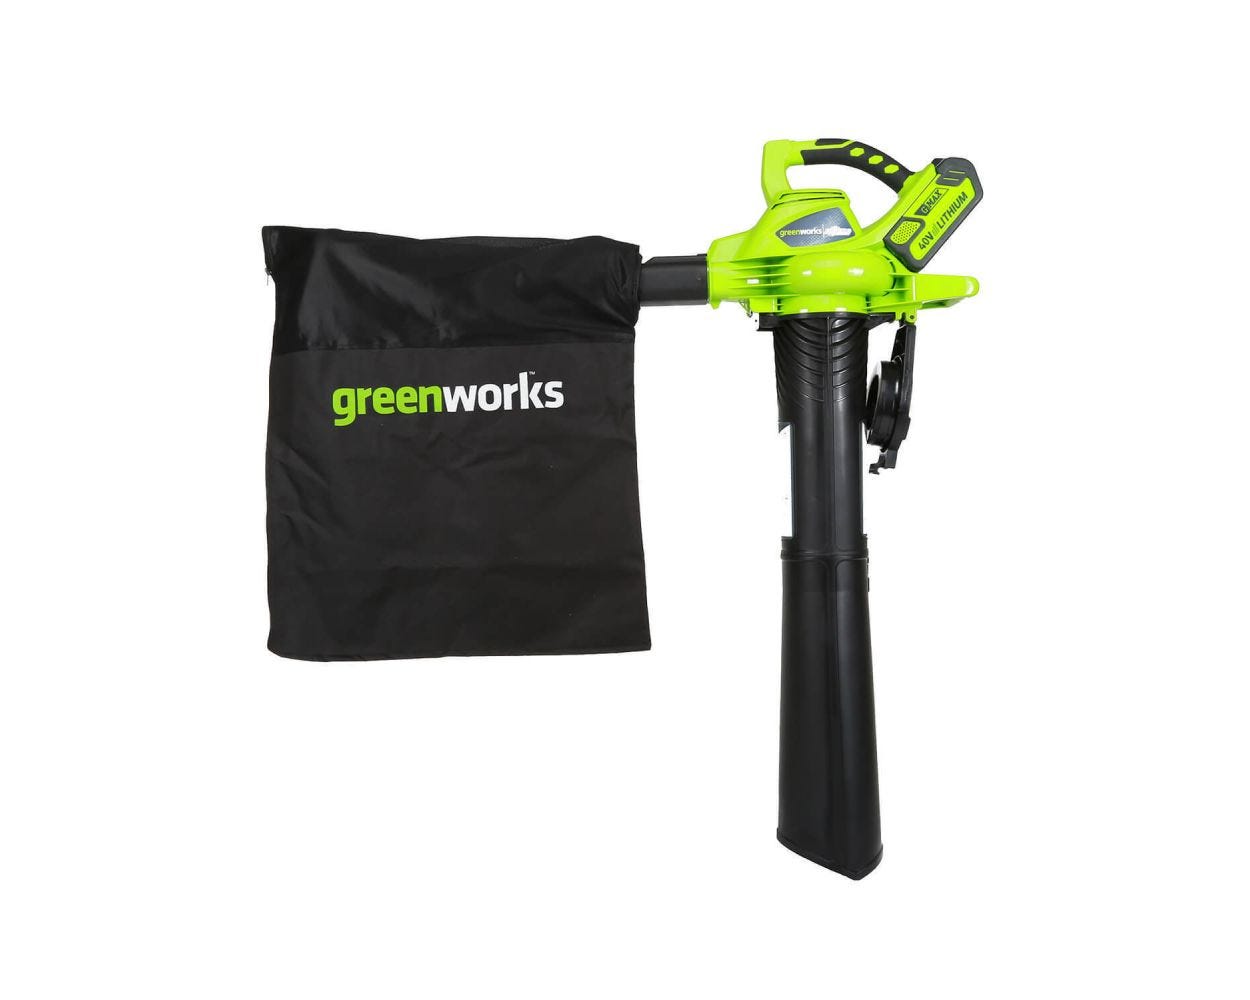 40V Brushless Leaf Blower / Vac | Greenworks